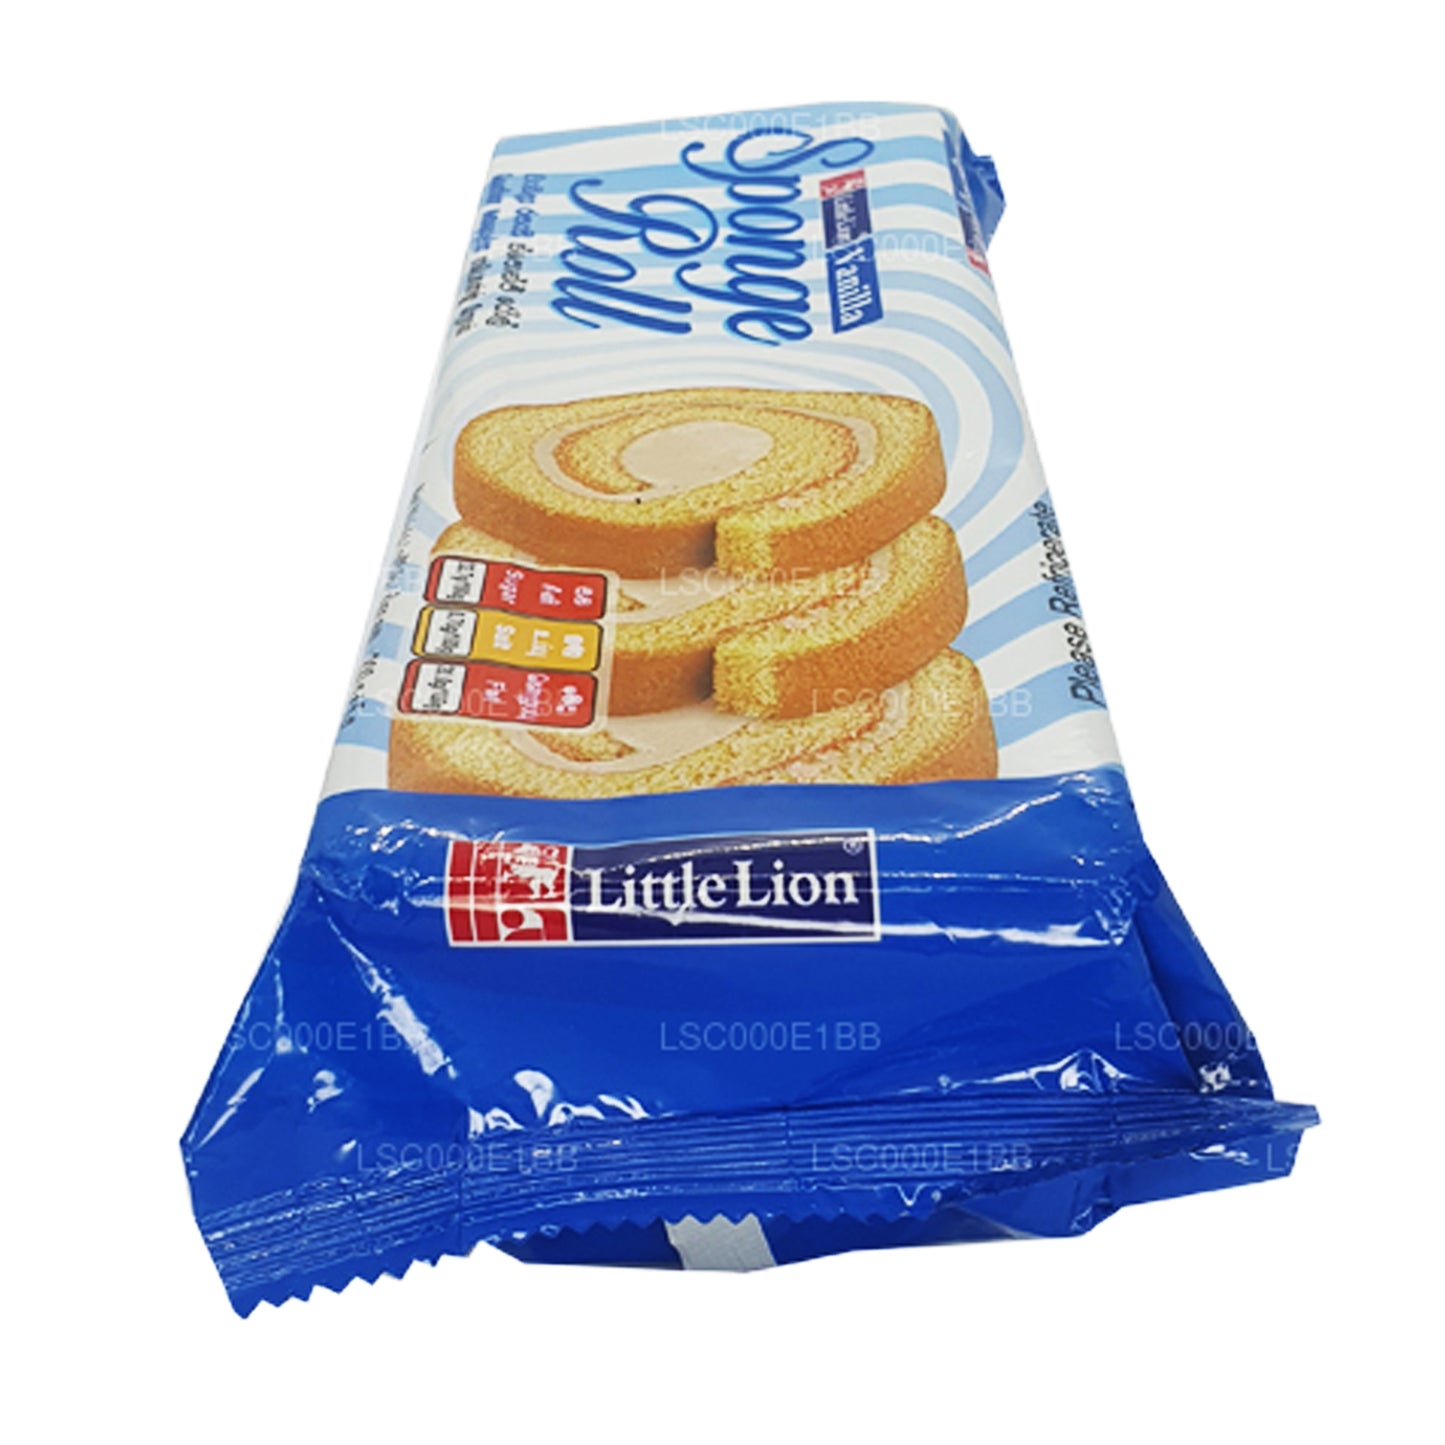 Little Lion Sponge Roll Vanille (200 g)